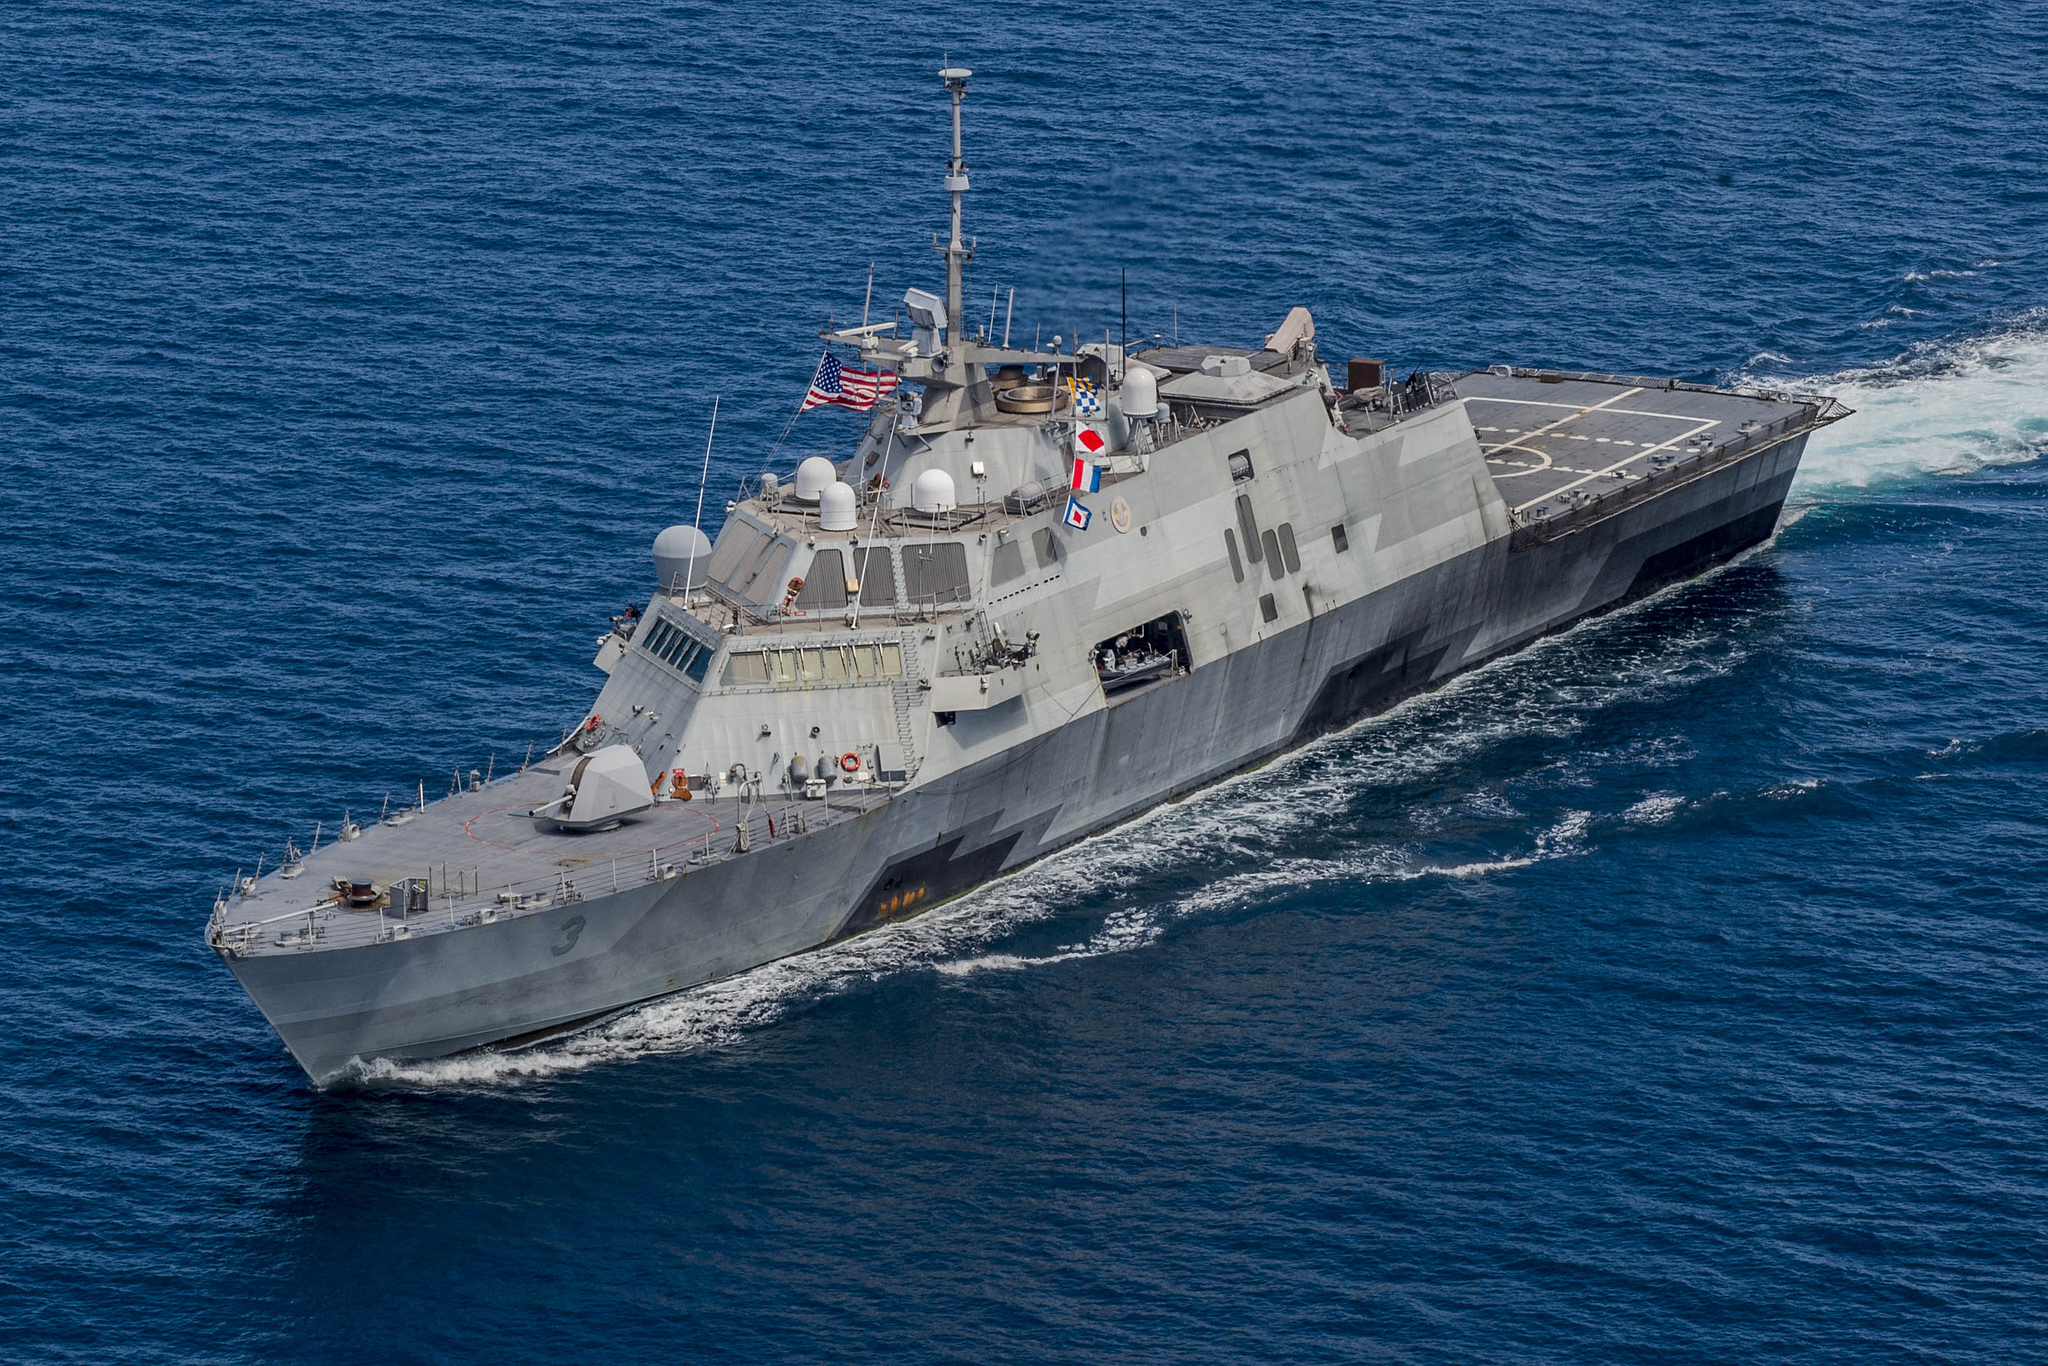 USS FORT WORTH LCS-3 am 19.08.2015 in der Sulu-See Bild: U.S. Navy